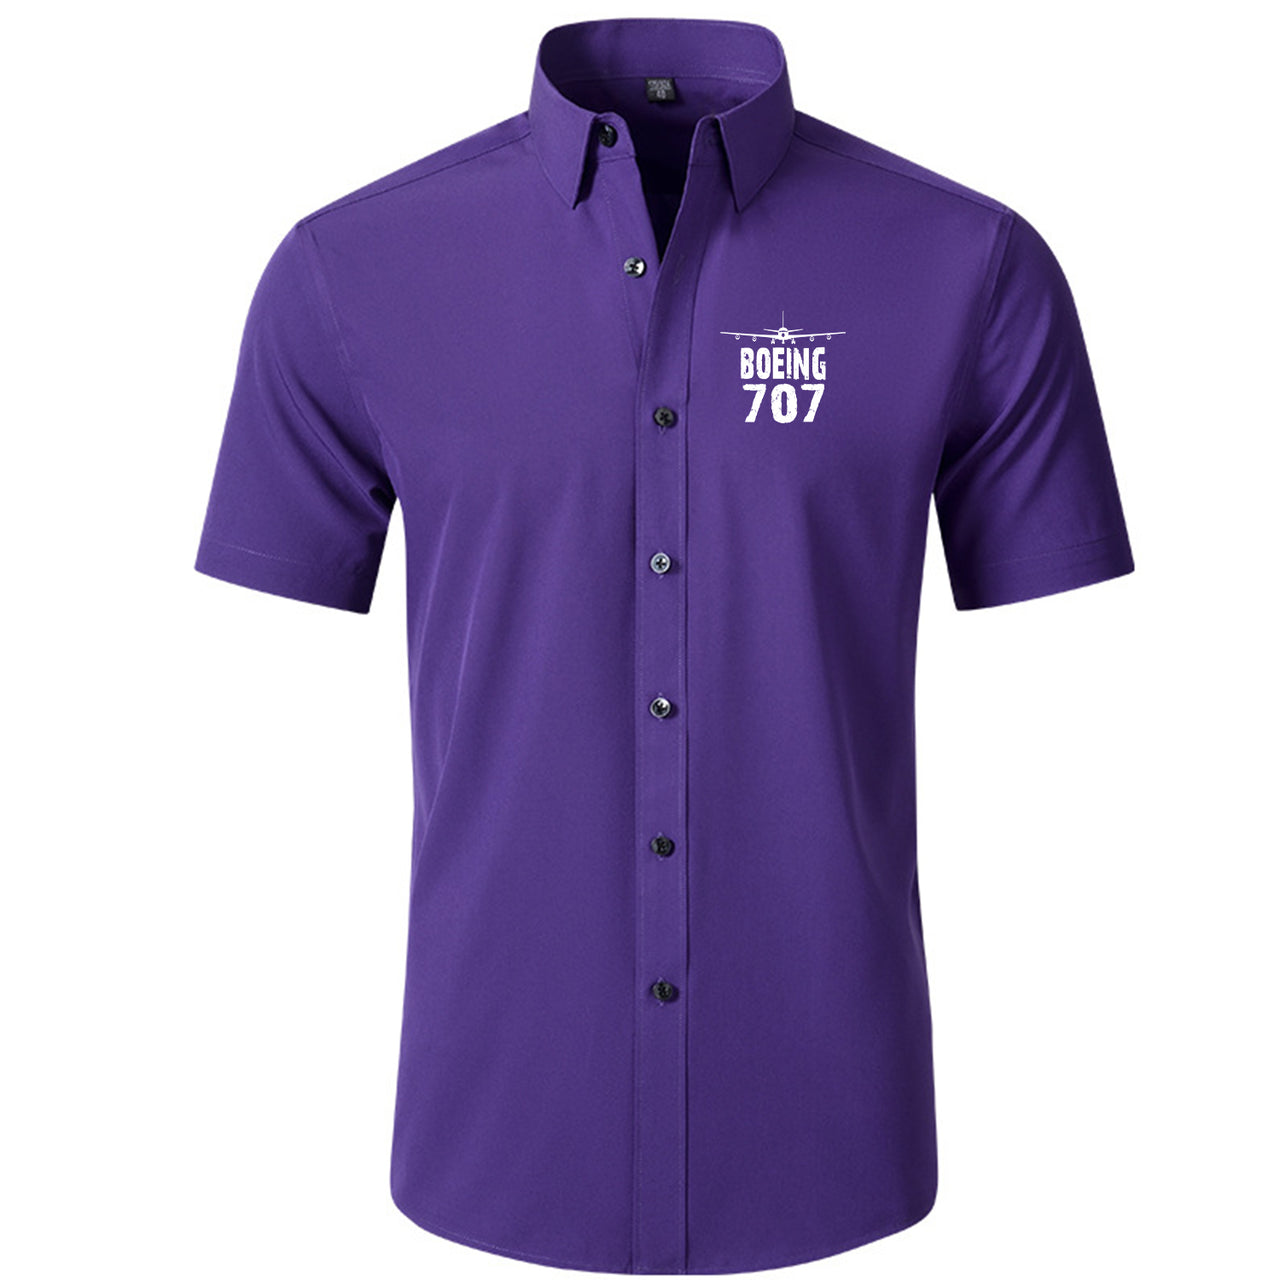 Boeing 707 & Plane Designed Short Sleeve Shirts